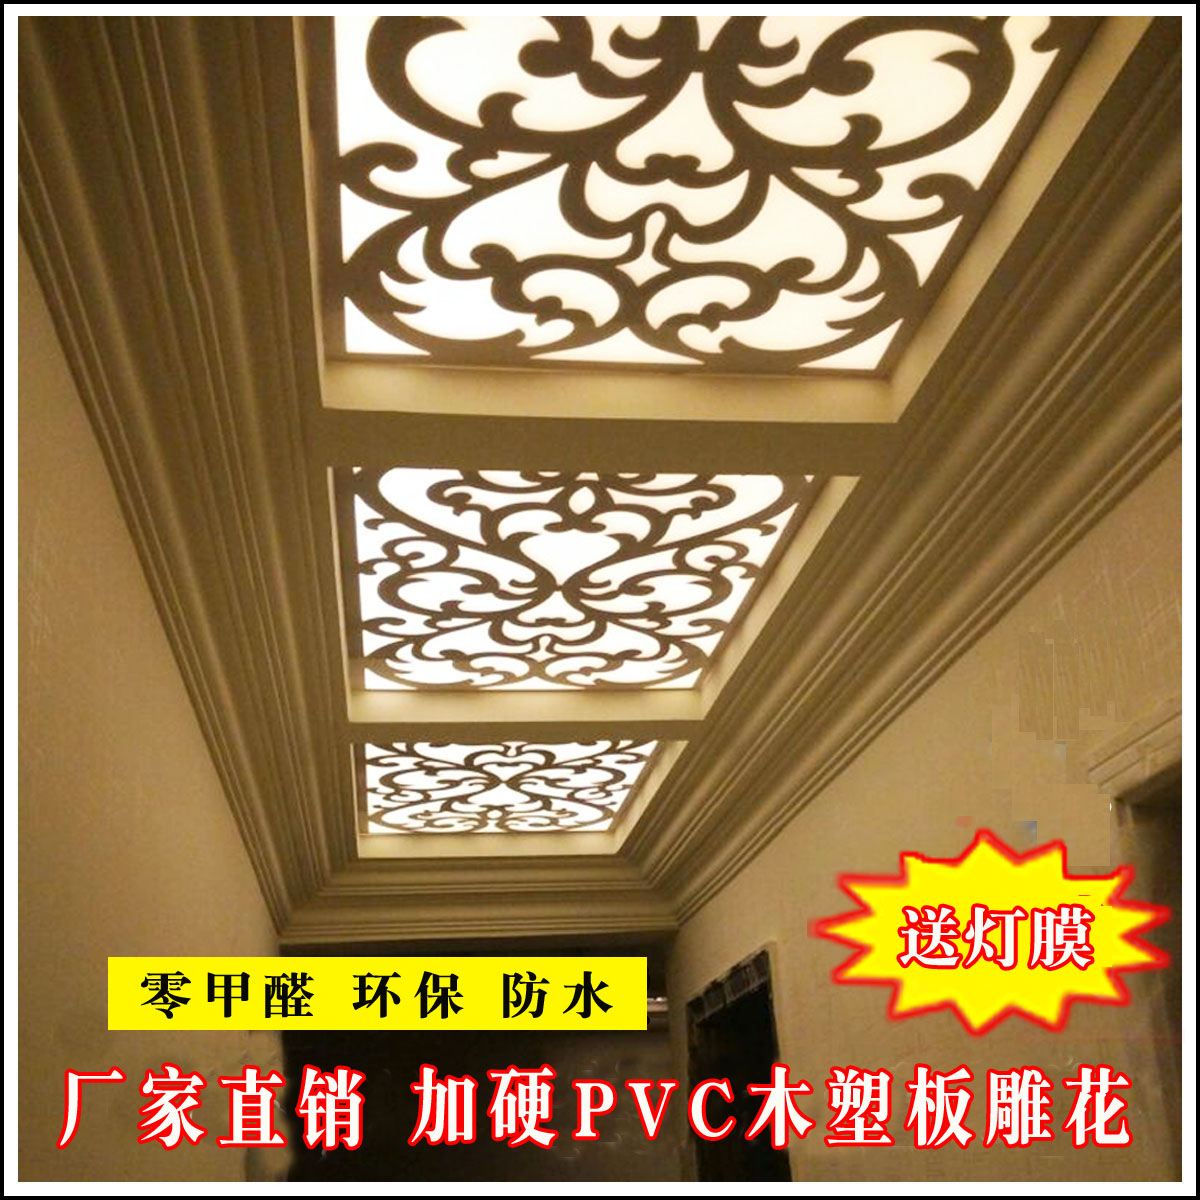 吊顶花格中式雕花装饰PVC通花板欧式客厅玄关隔断屏风装饰背景墙